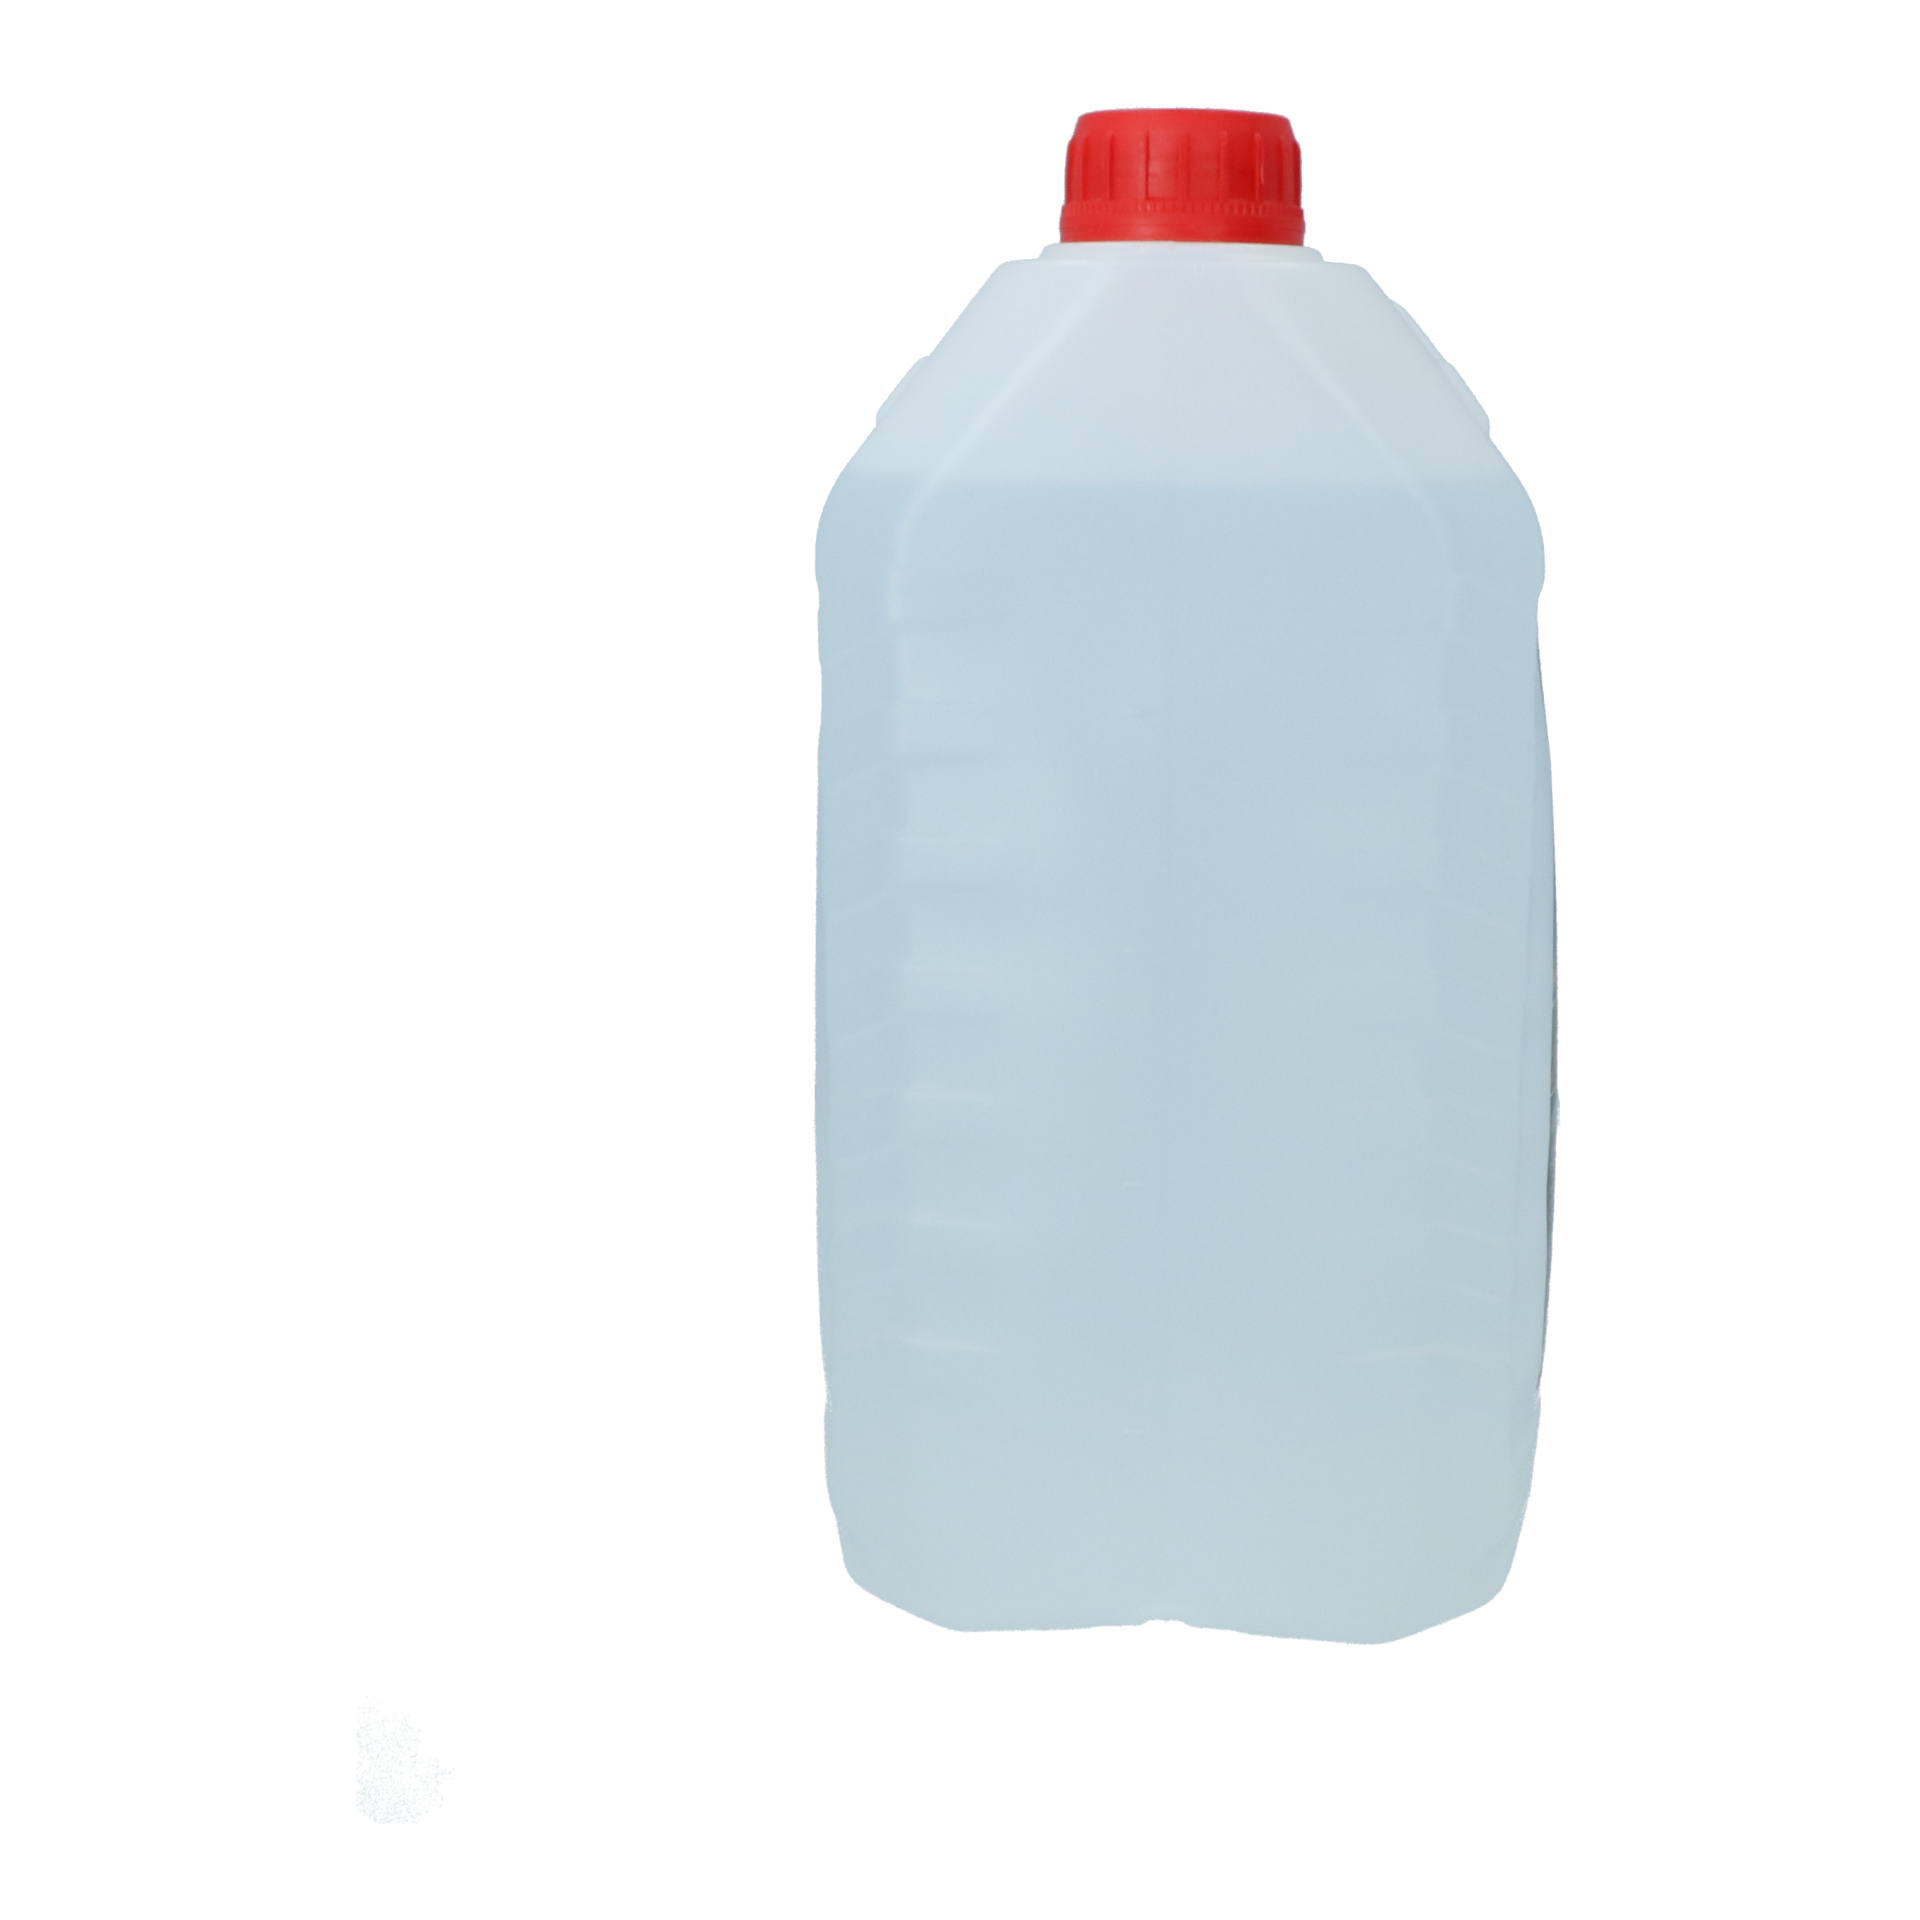 Protecton Gedemineraliseerd Water 5 Liter (1890920)